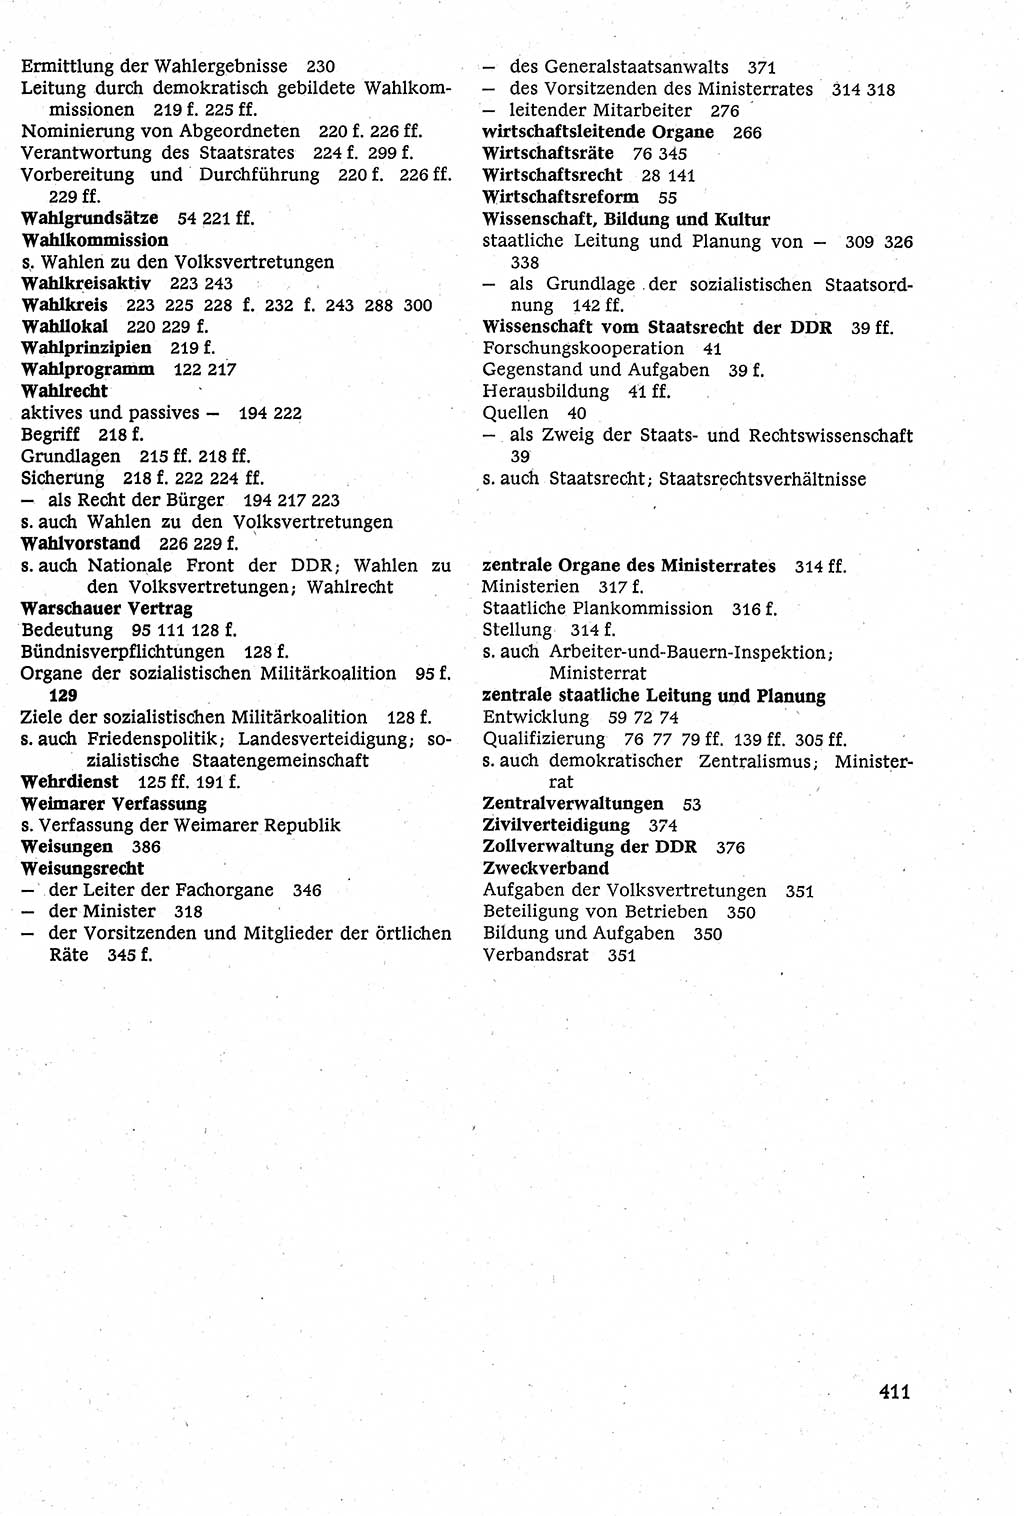 Staatsrecht der DDR [Deutsche Demokratische Republik (DDR)], Lehrbuch 1984, Seite 411 (St.-R. DDR Lb. 1984, S. 411)